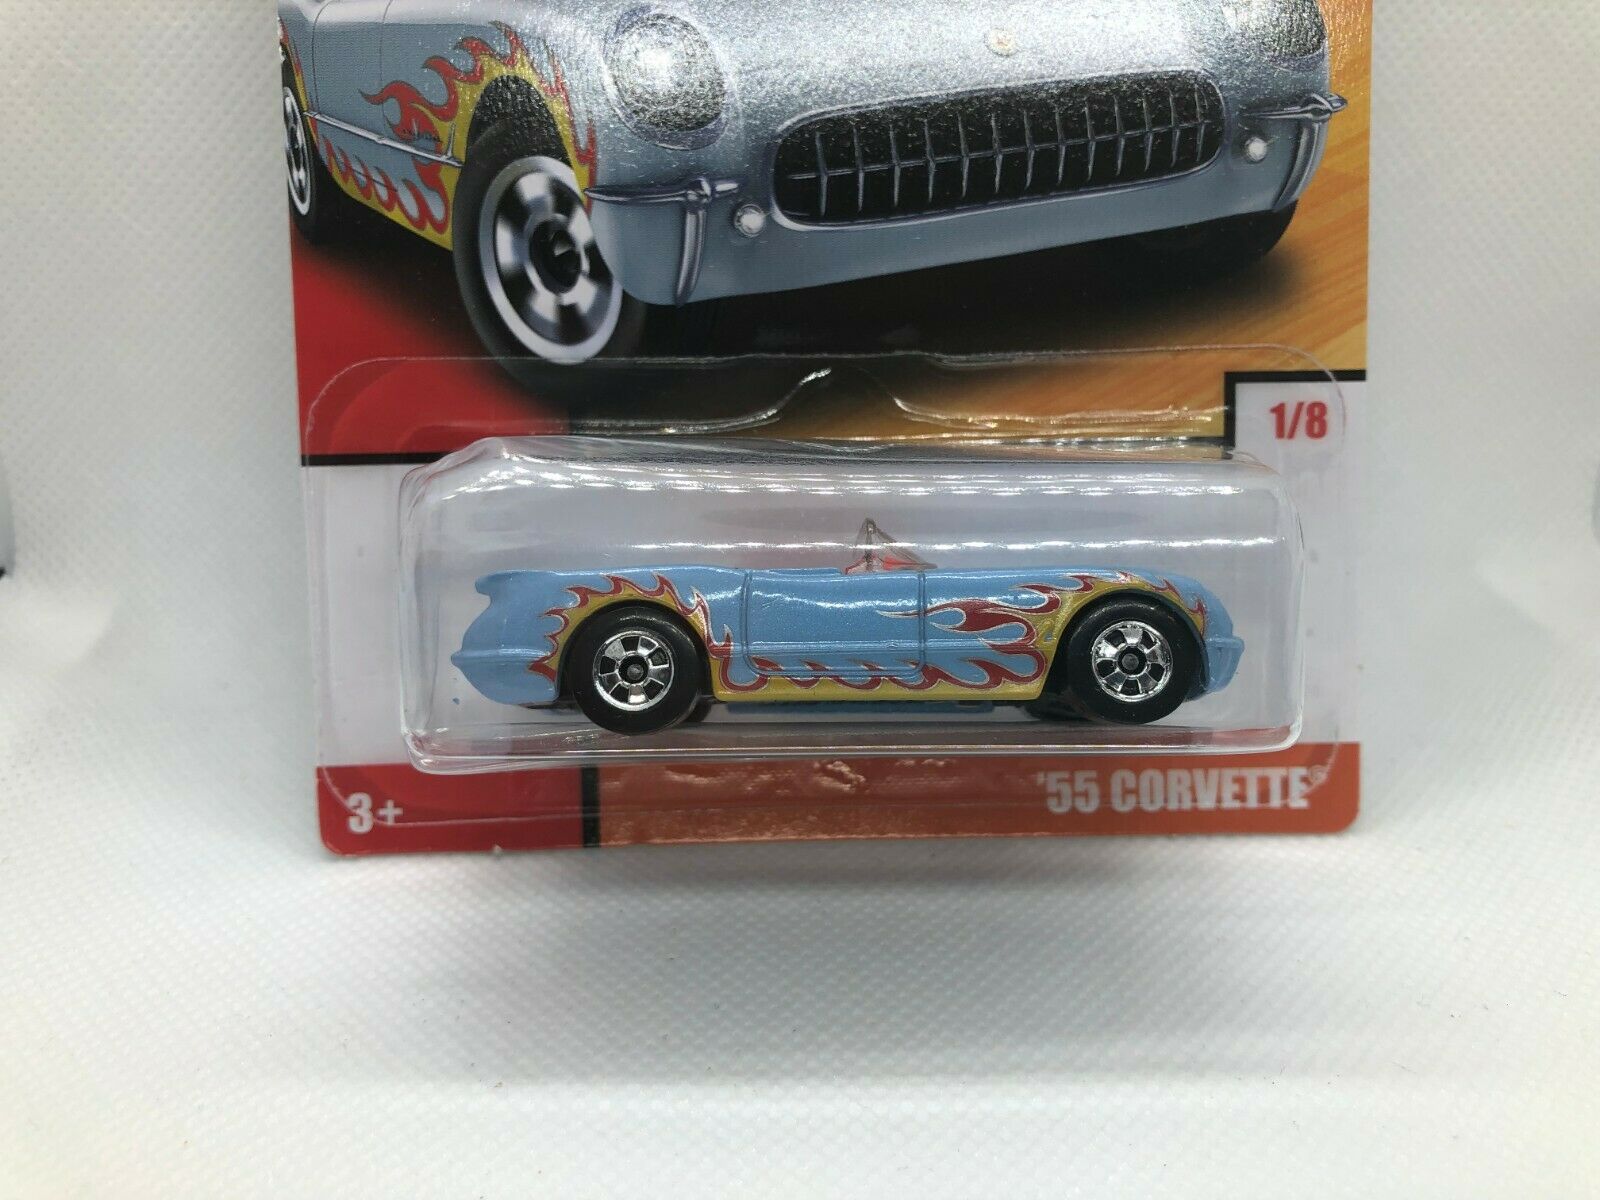 55 Corvette Hot Wheels